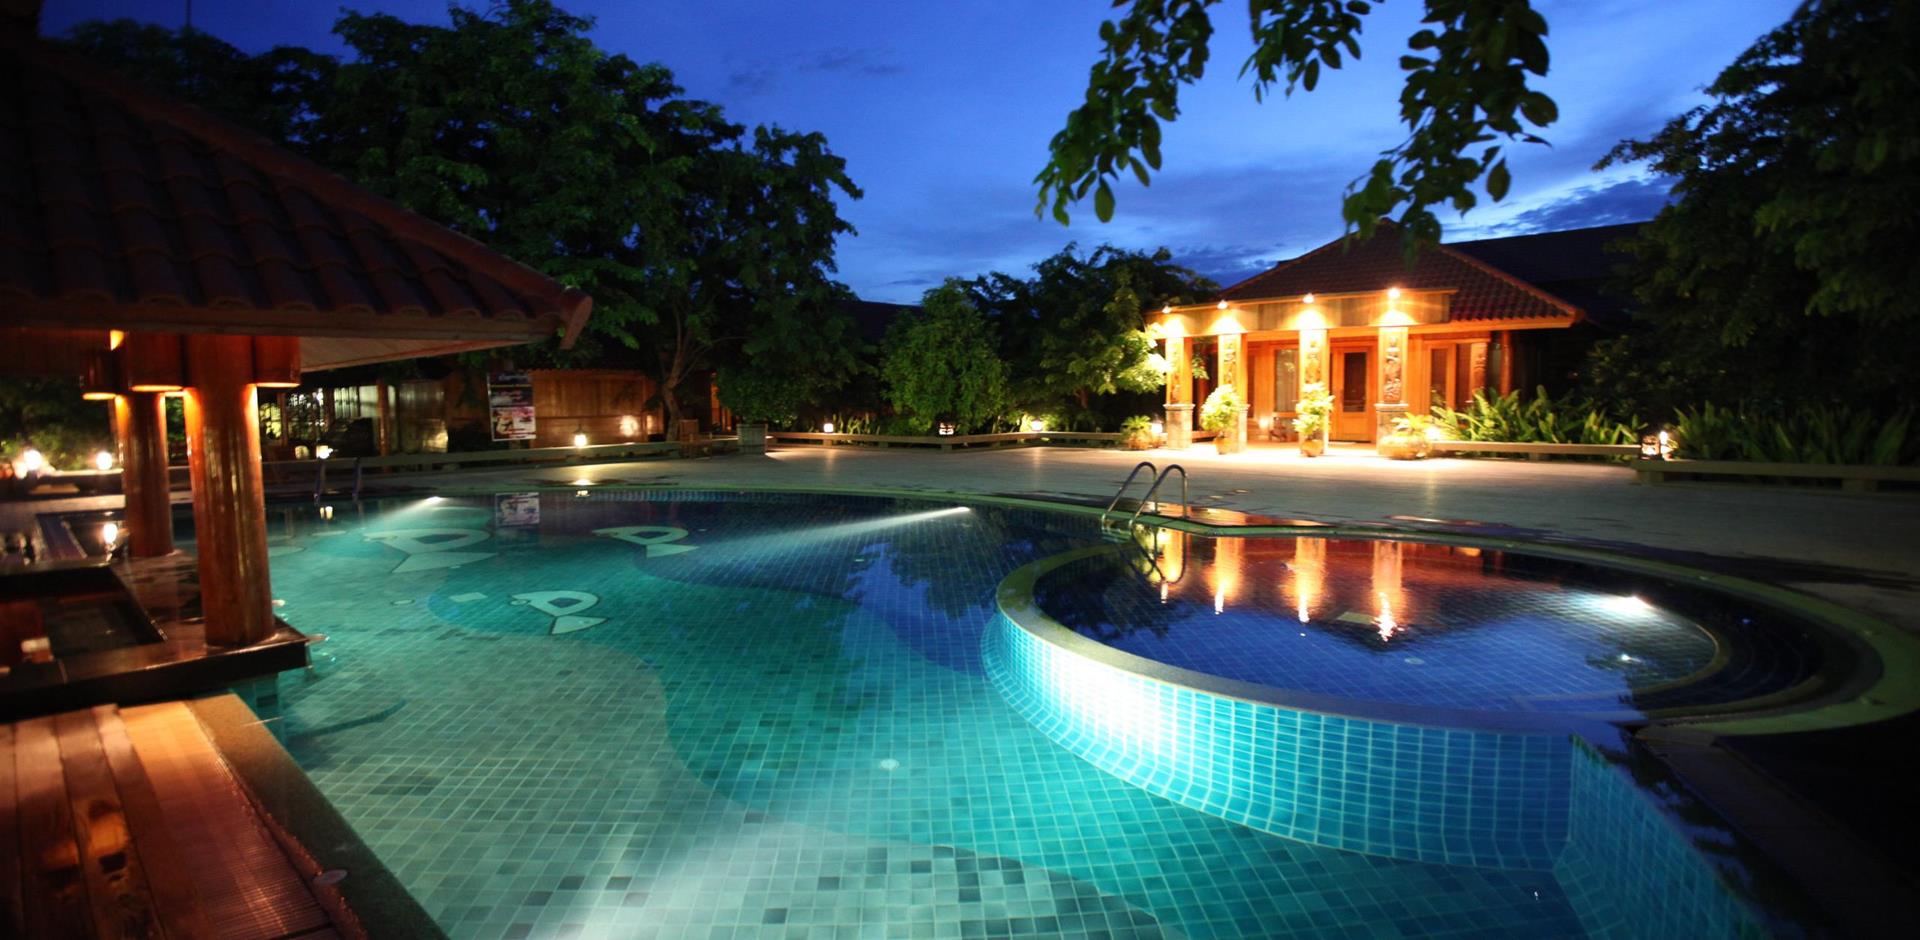 Rupar Mandalar Resort, Myanmar pool